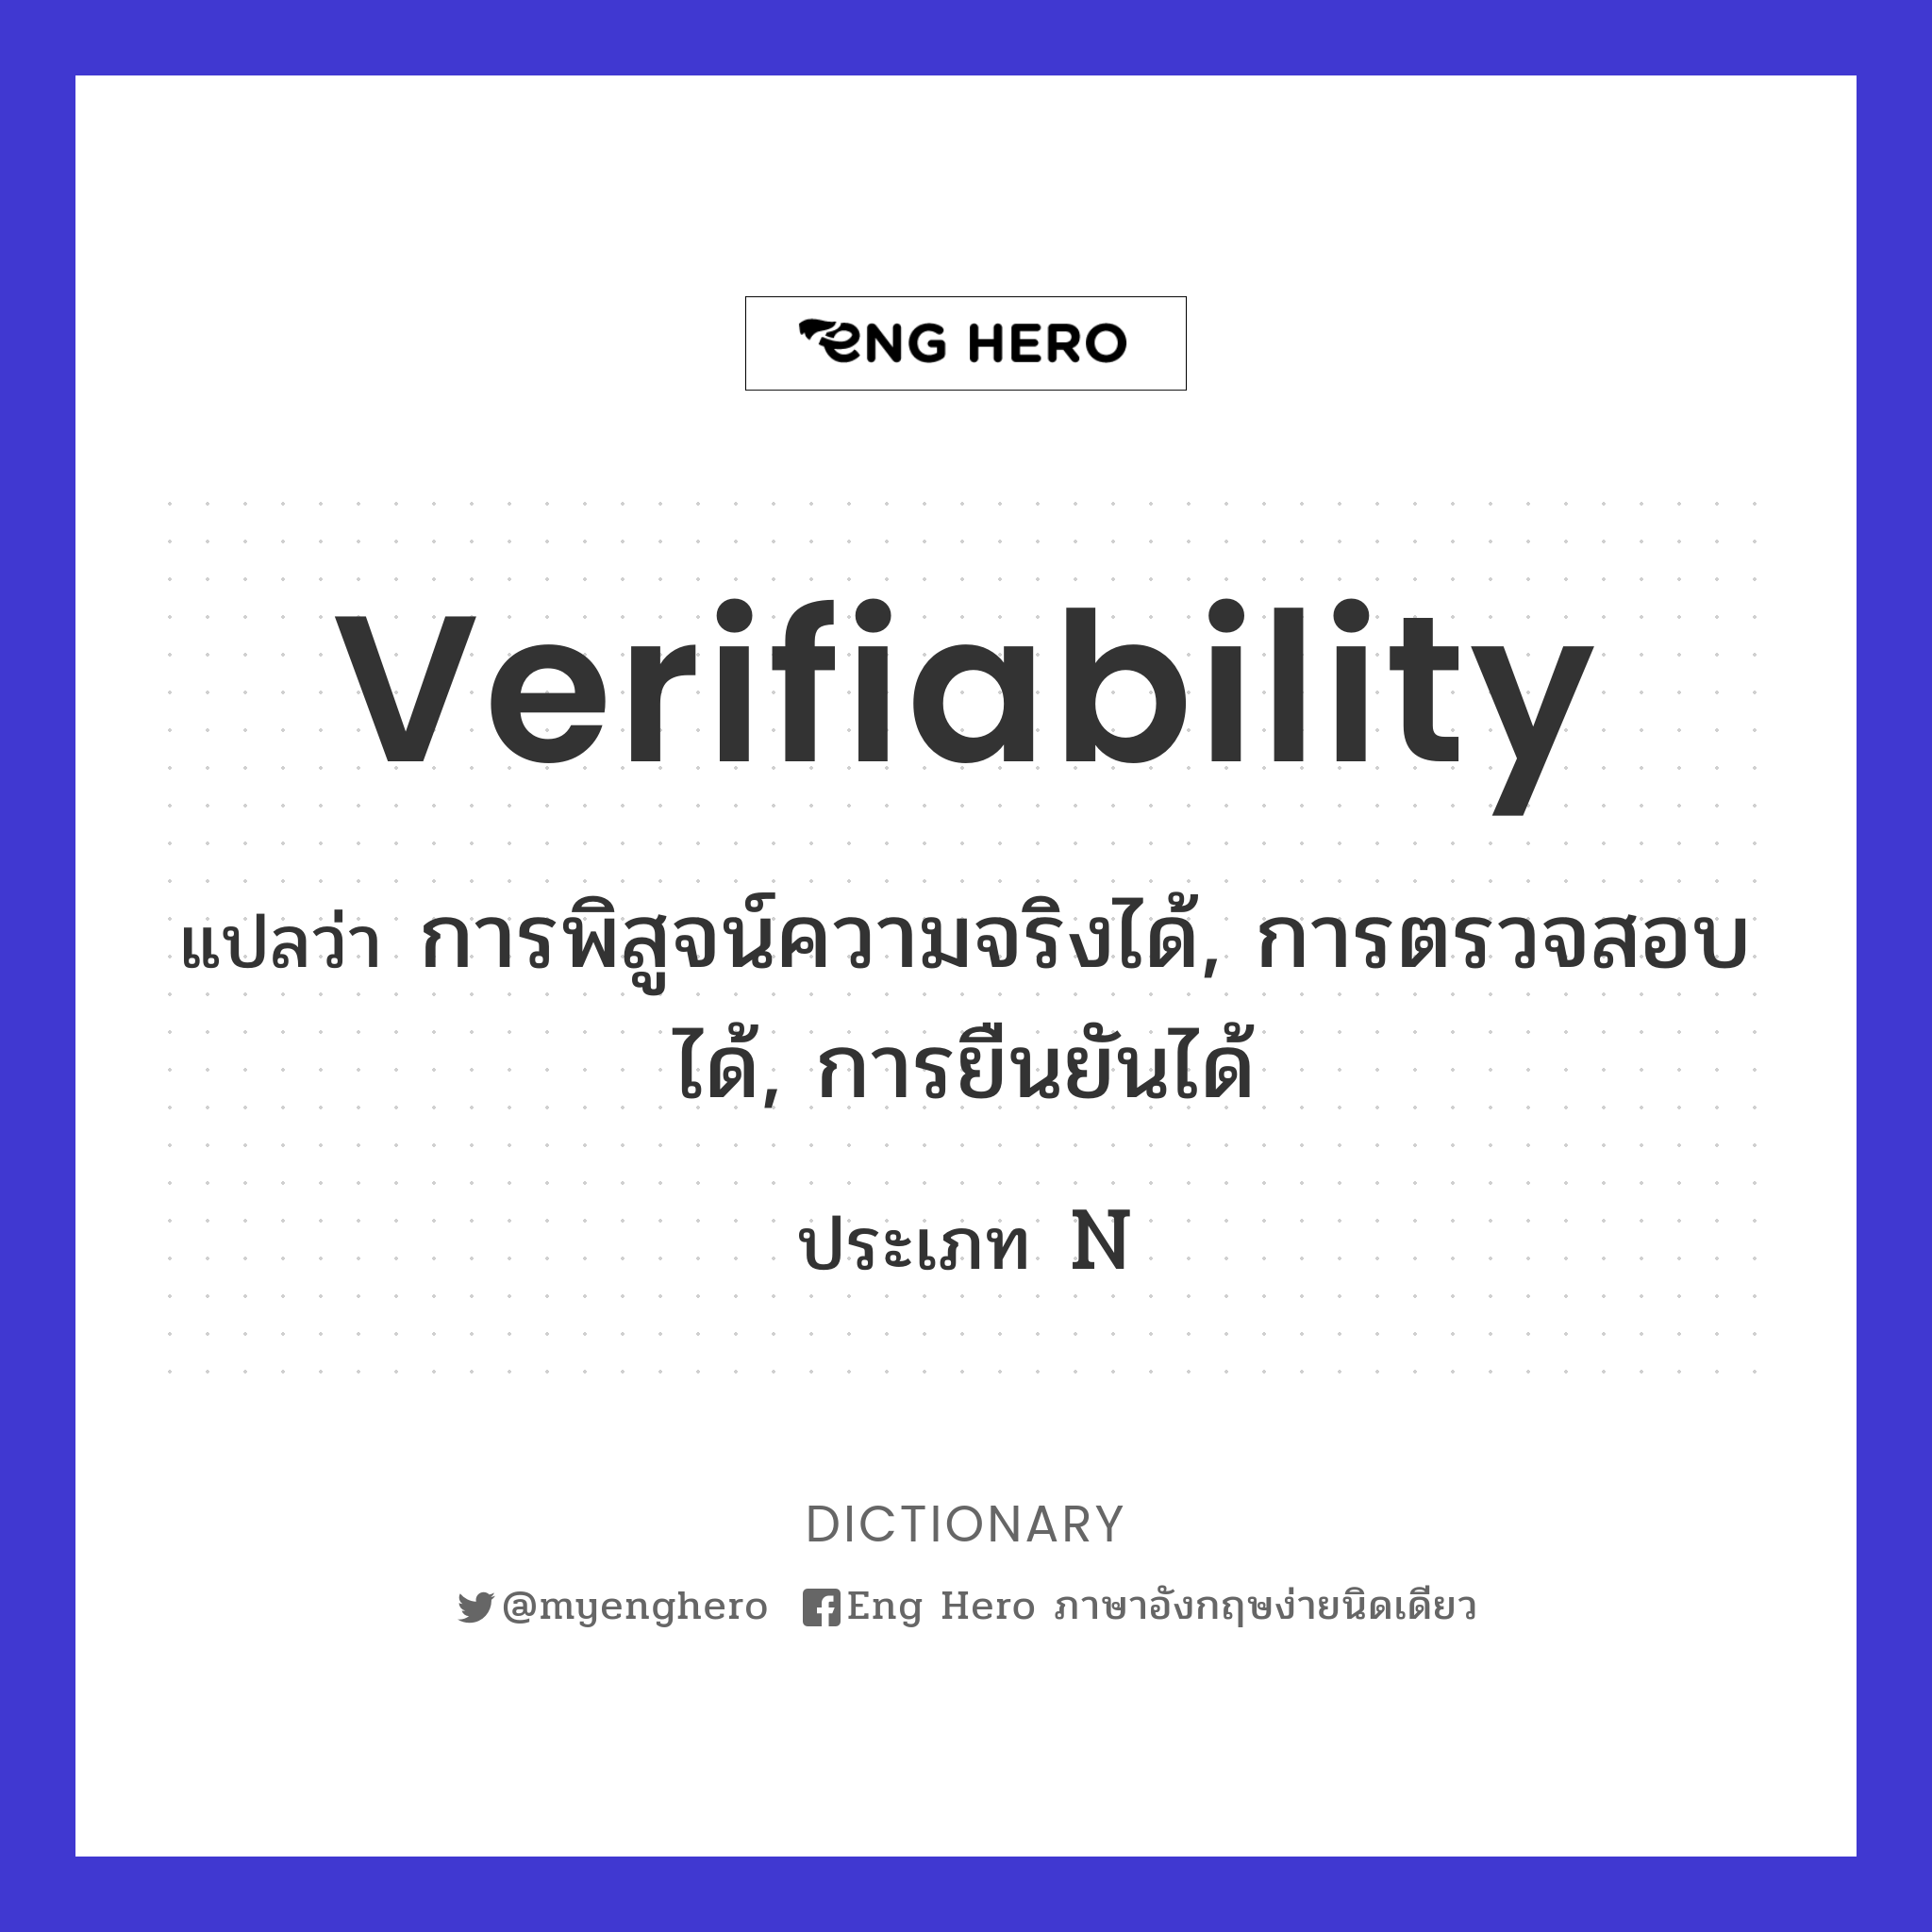 verifiability